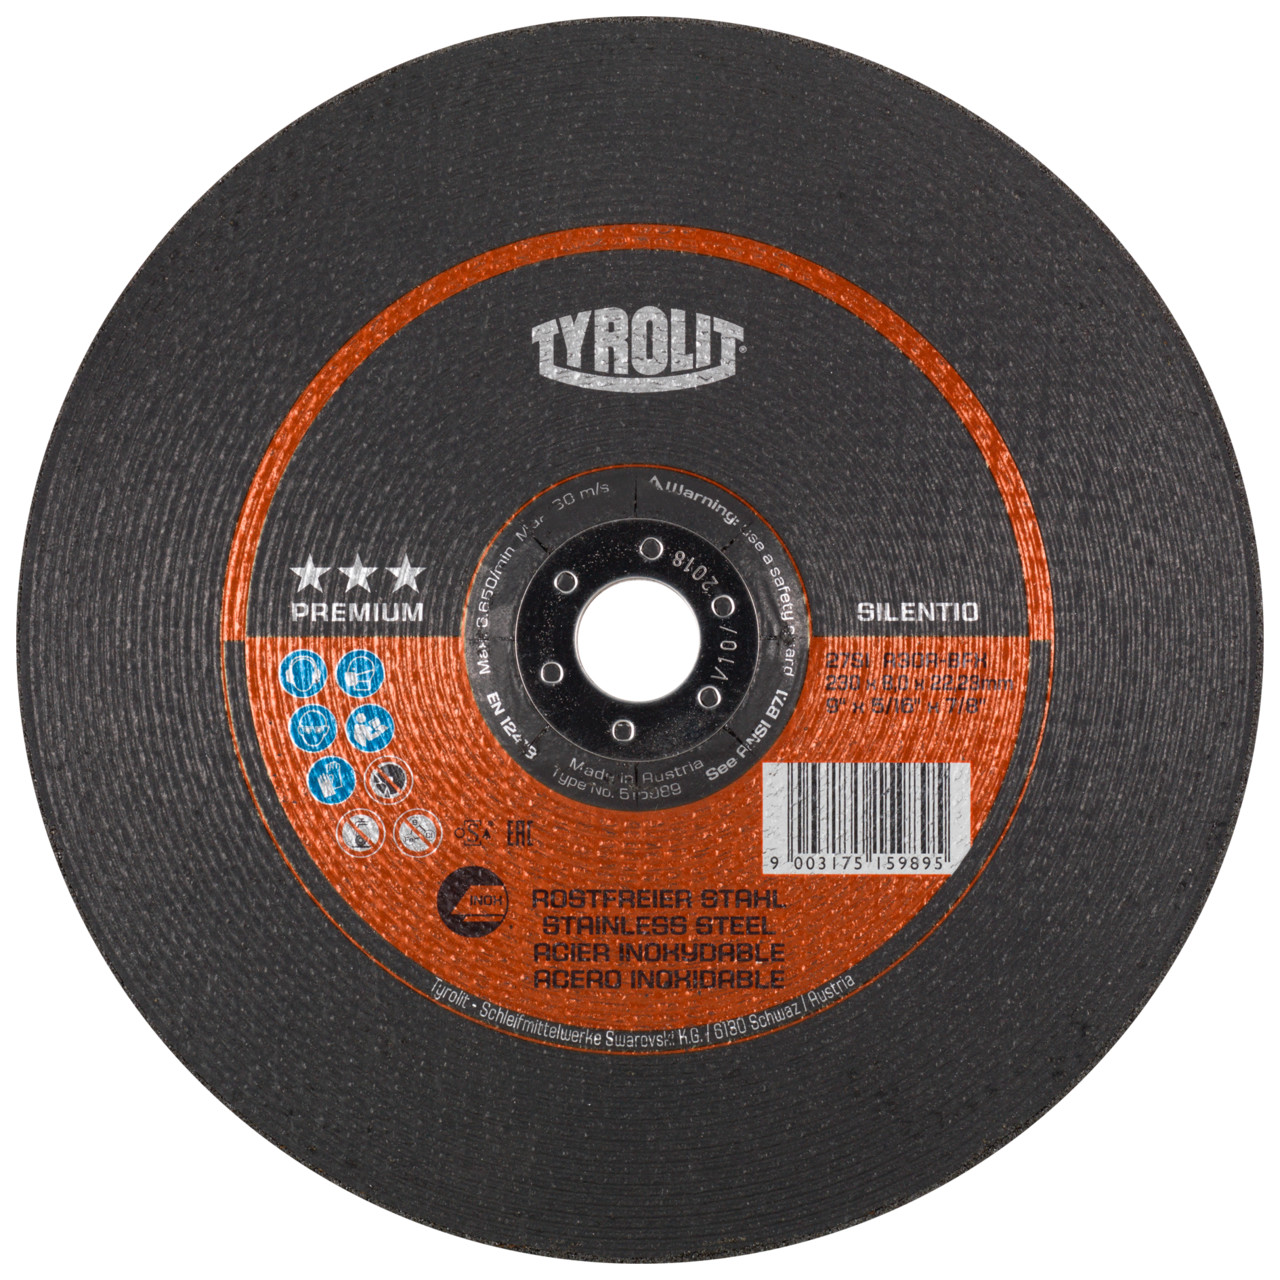 TYROLIT disco de desbaste DxUxH 230x8x22.23 Silentio para acero inoxidable, forma: 27 - versión offset, Art. 515989